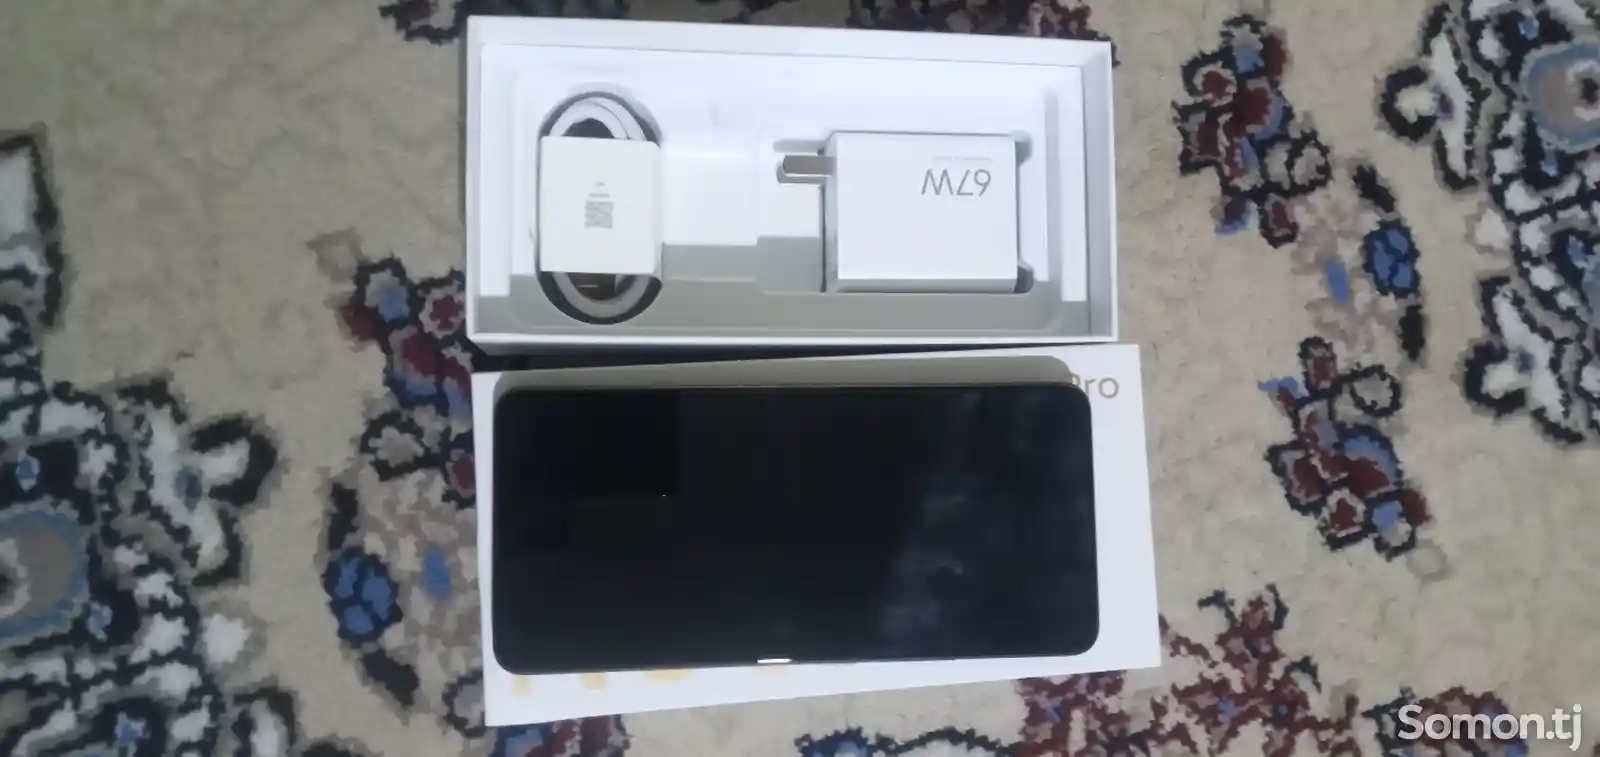 Xiaomi Redmi Note 13 pro-3